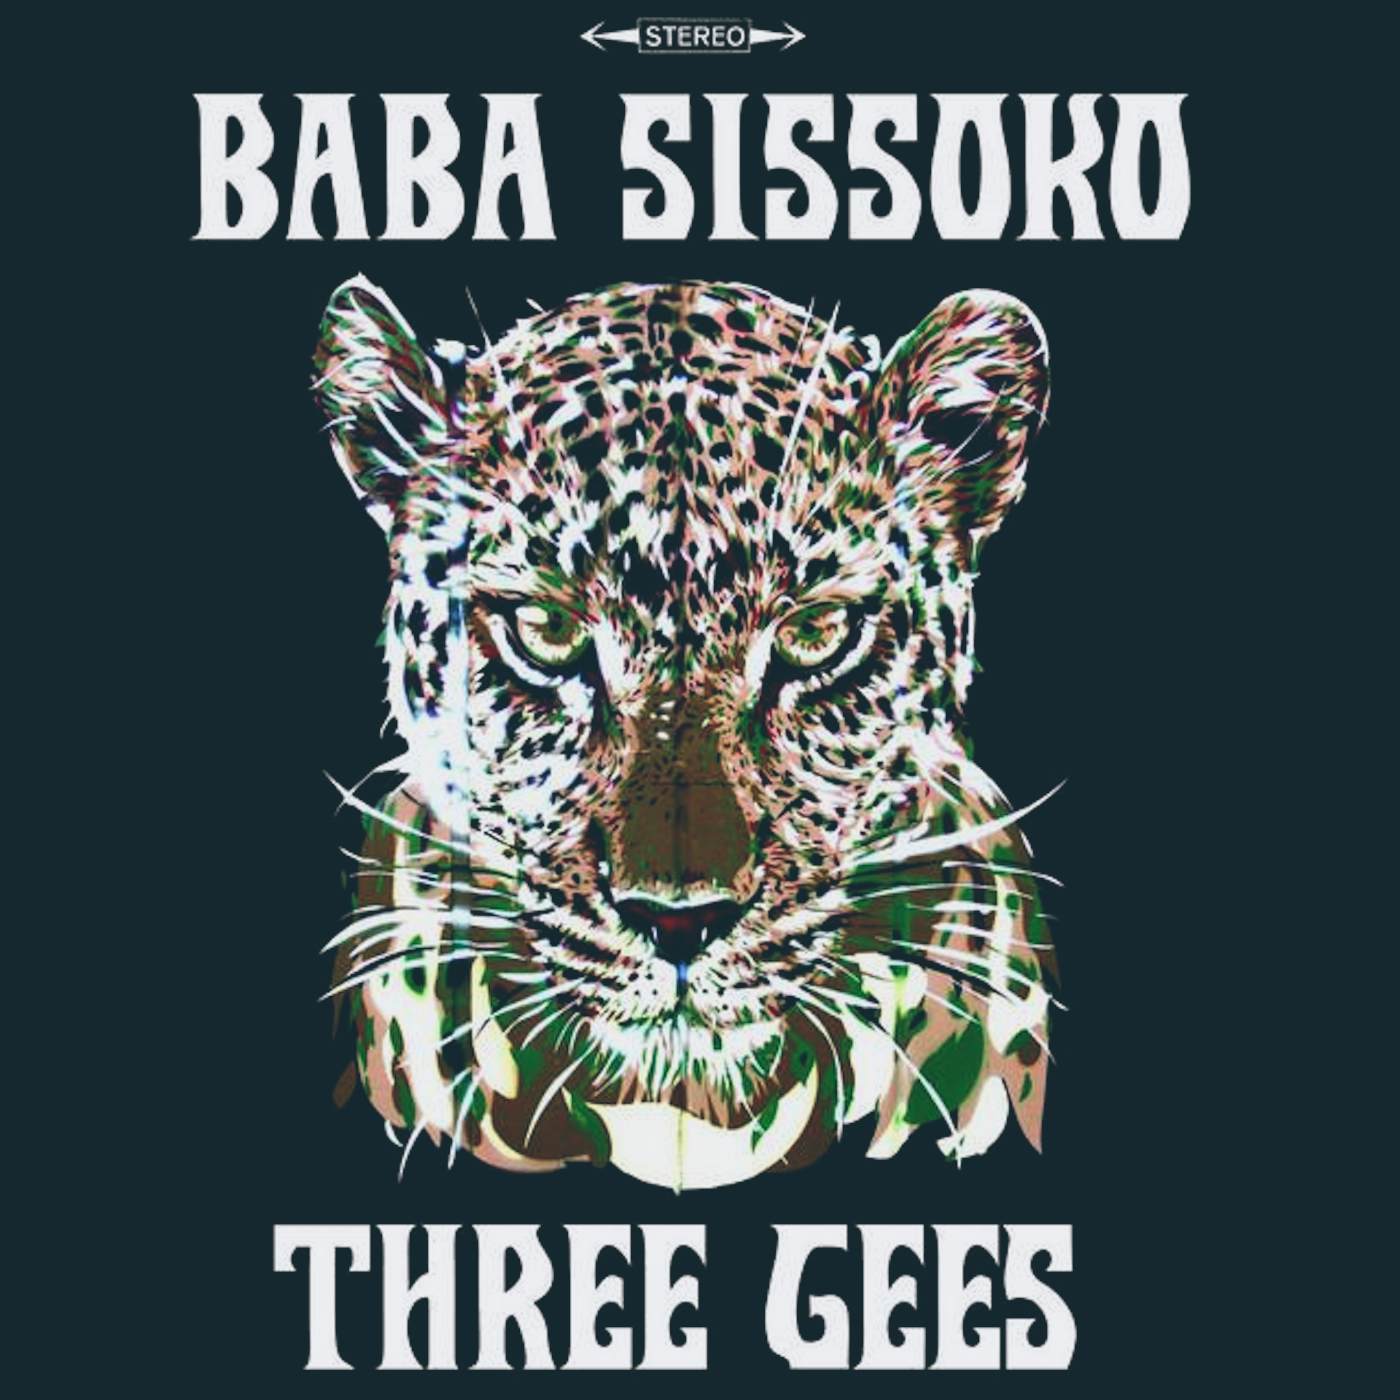 Baba Sissoko